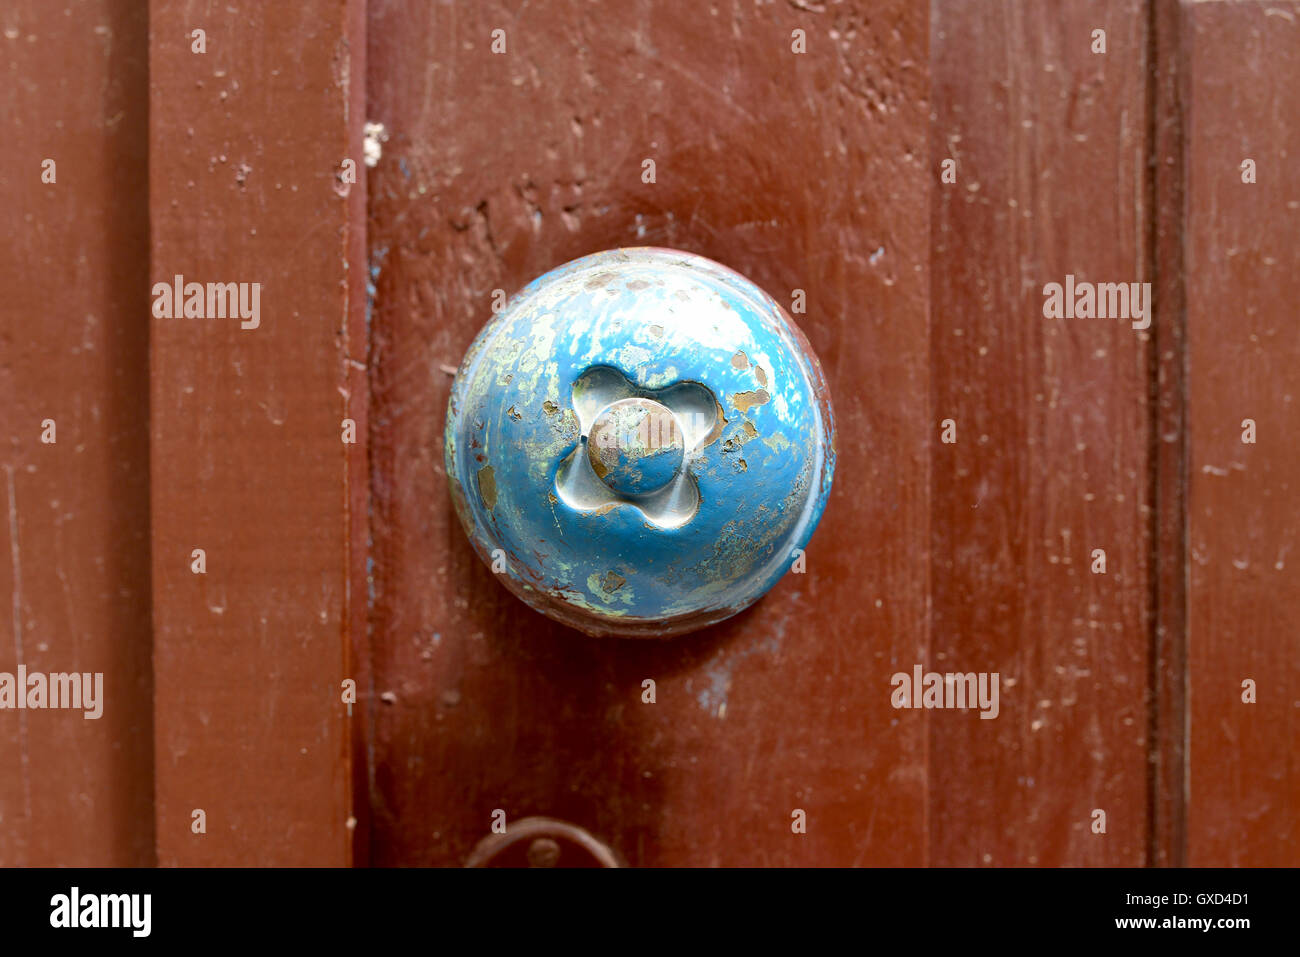 old wood door metal handle close detail Stock Photo